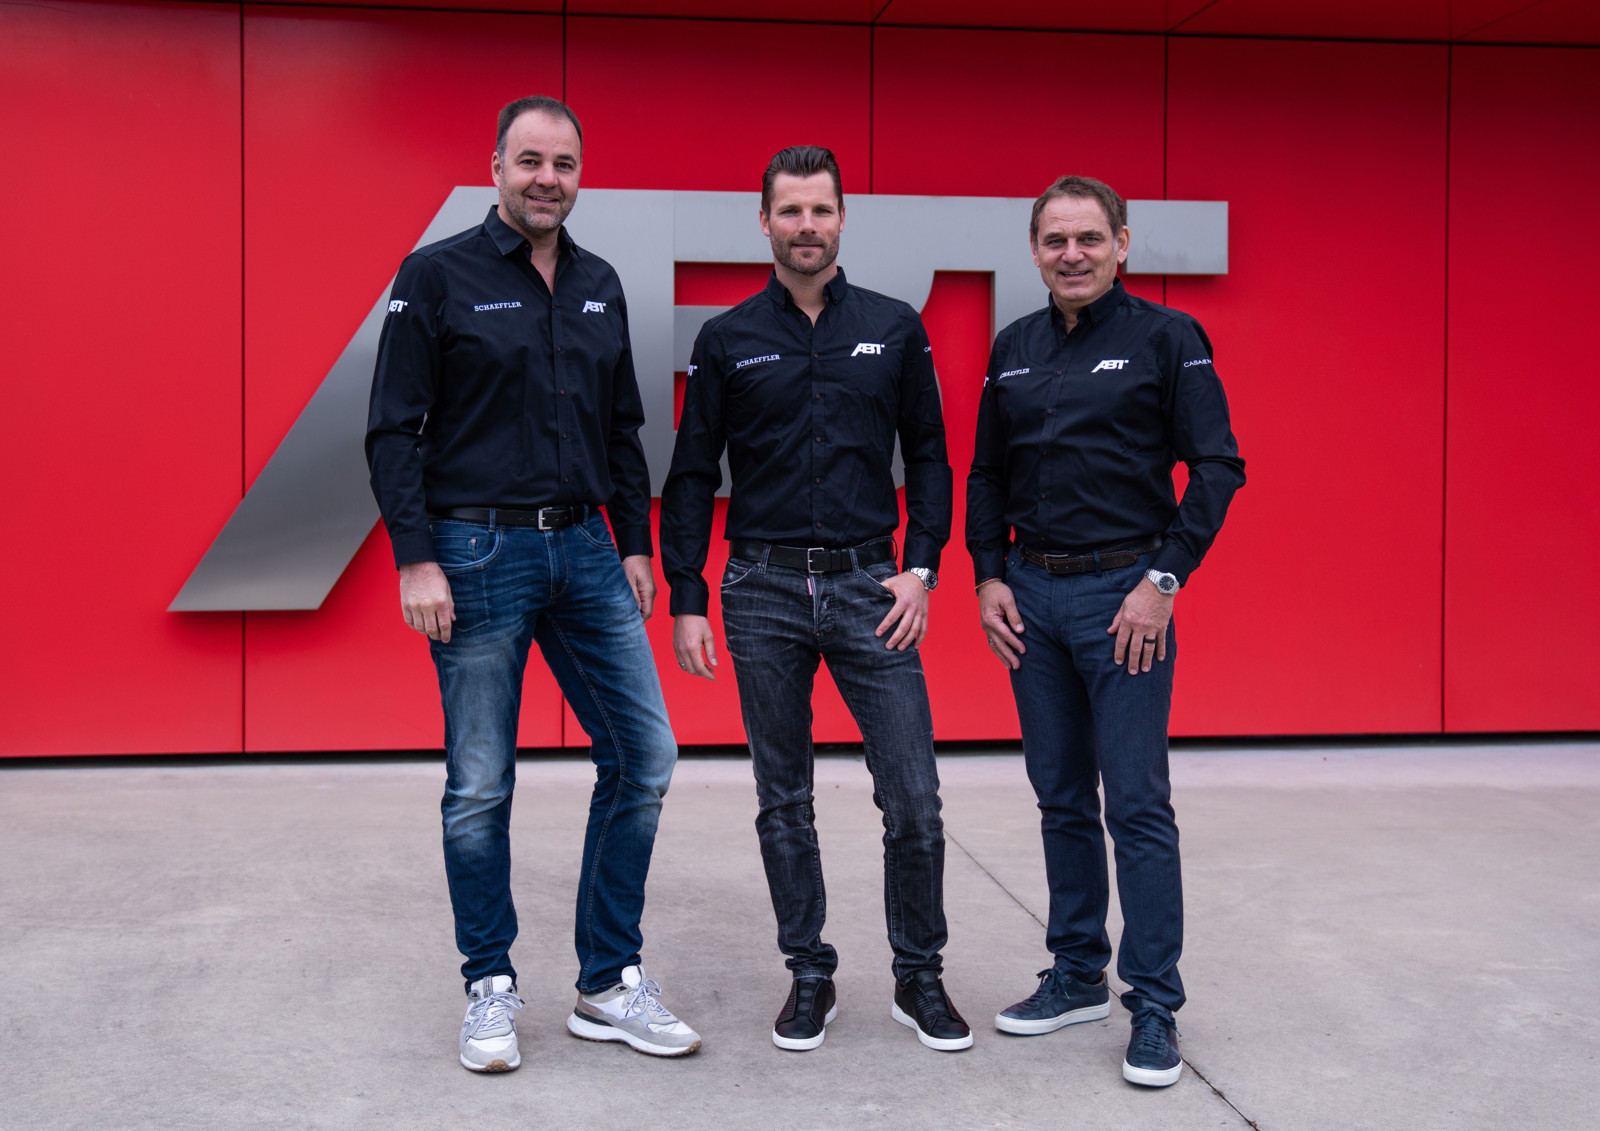 Thomas Biermaier, CEO von Abt Sportsline, (l.) und Hans-Jürgen Abt, CEO der Abt SE (r.) mit dem neuen abt-Motorsportdirektor Martin Tomczyk.